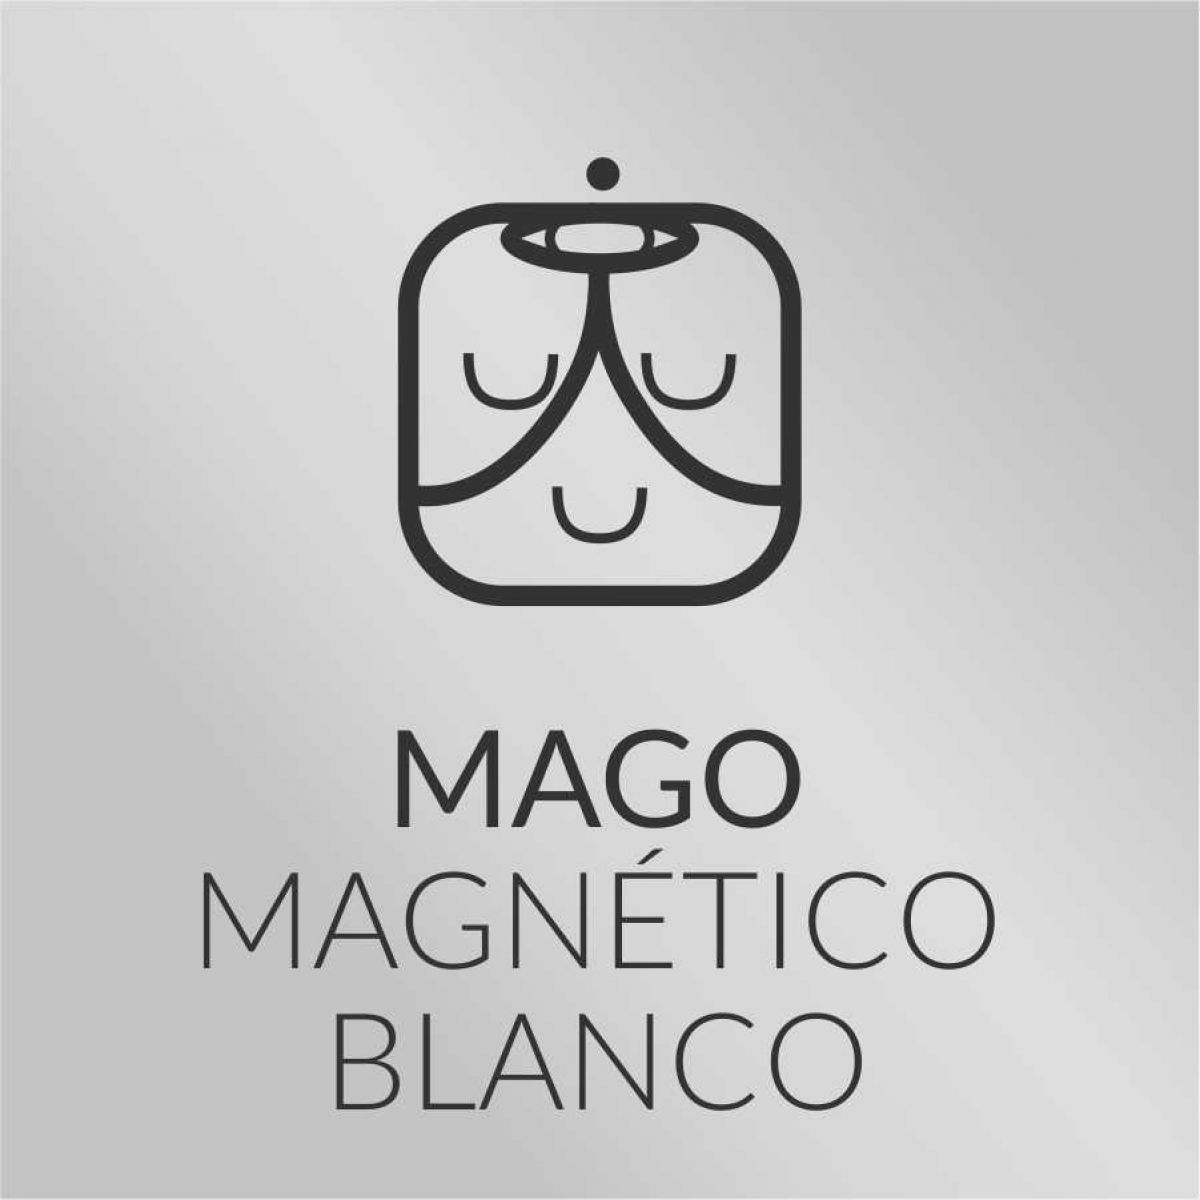 Mago Magnético Blanco